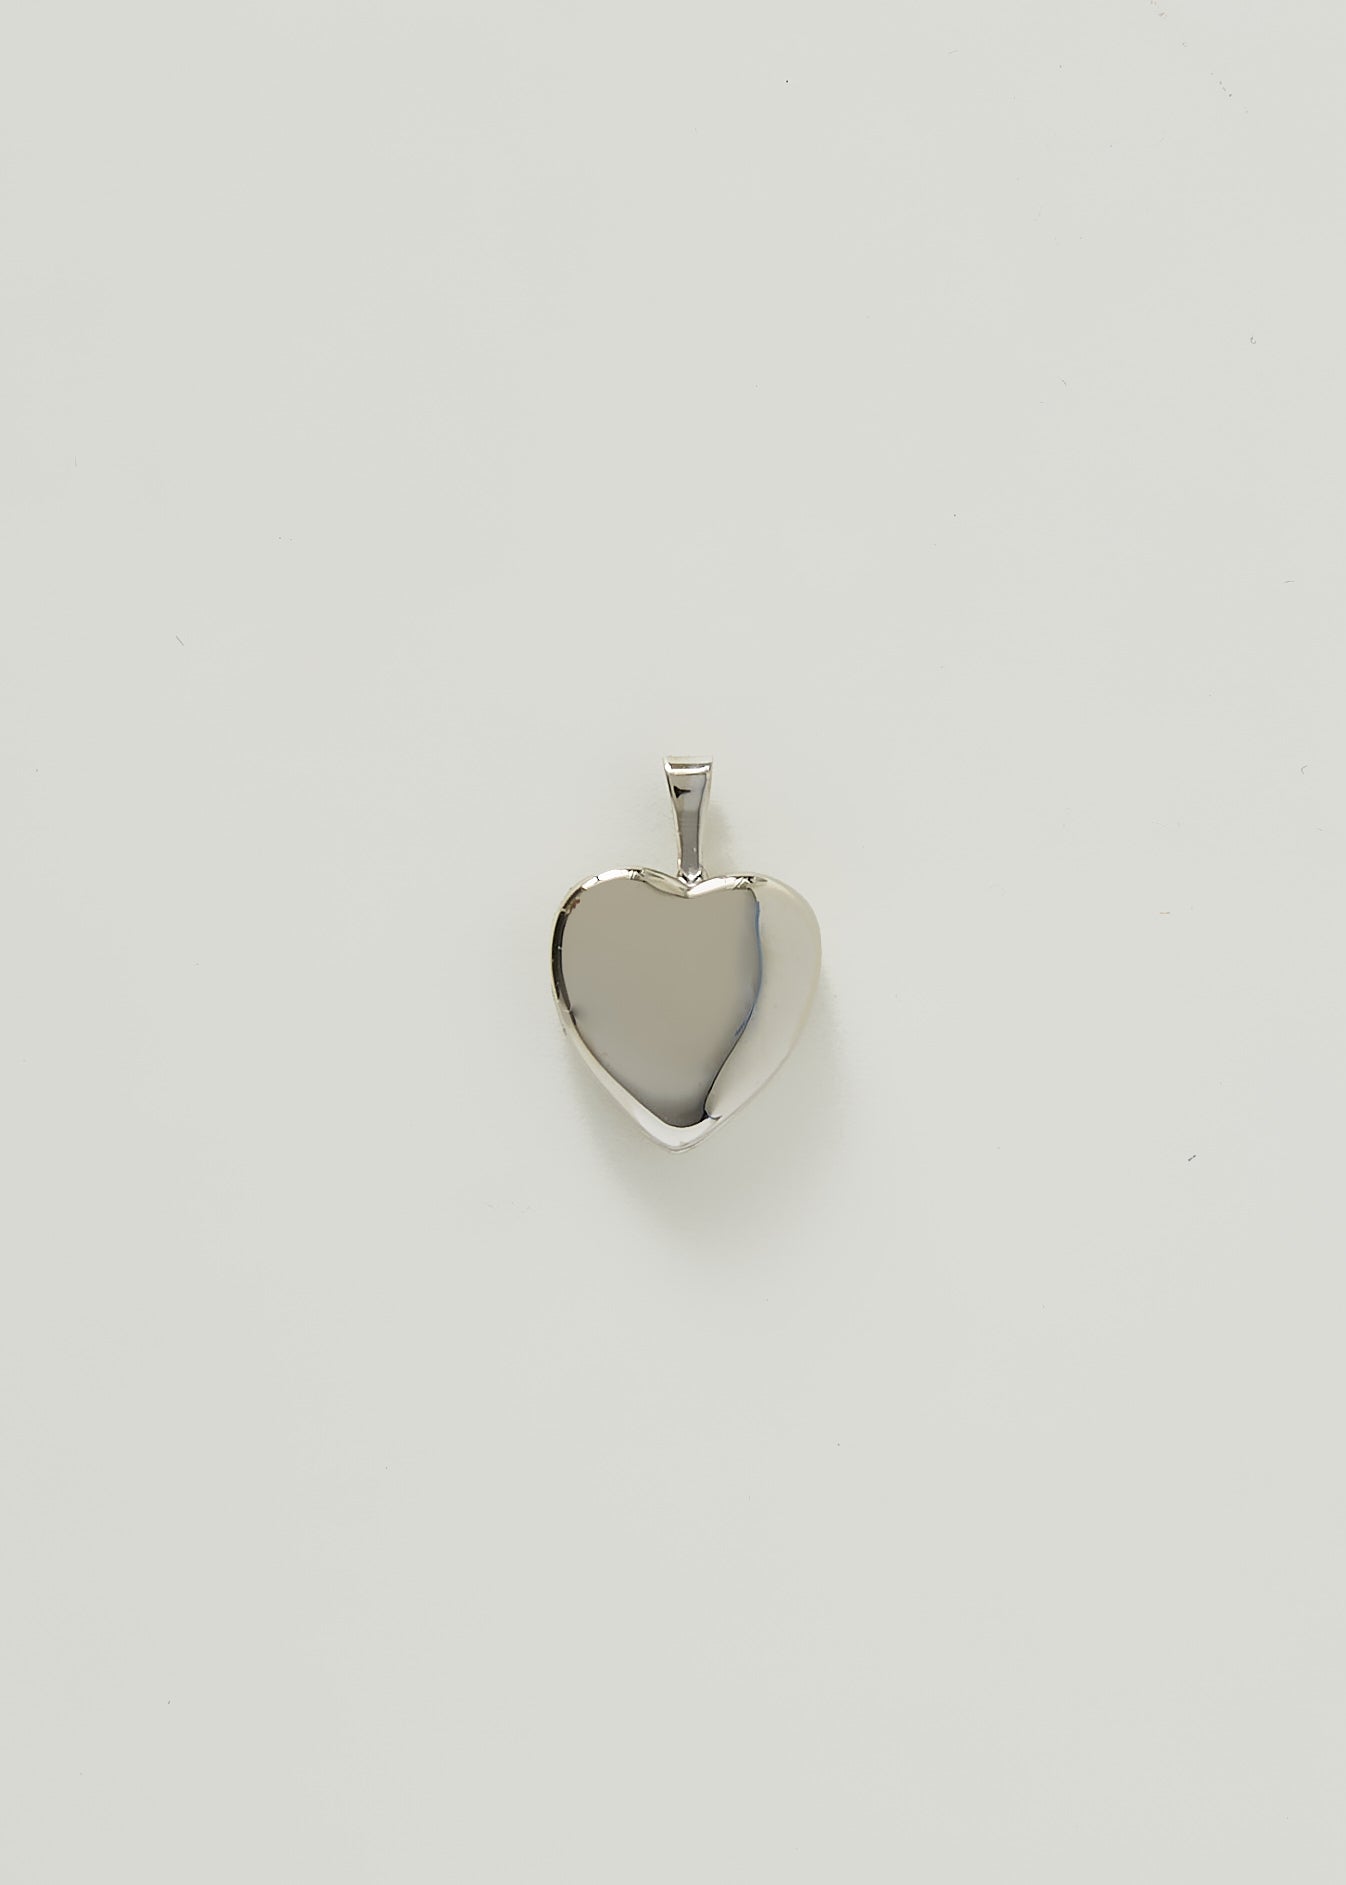 alt="Vintage Sterling Silver Heart Locket I"